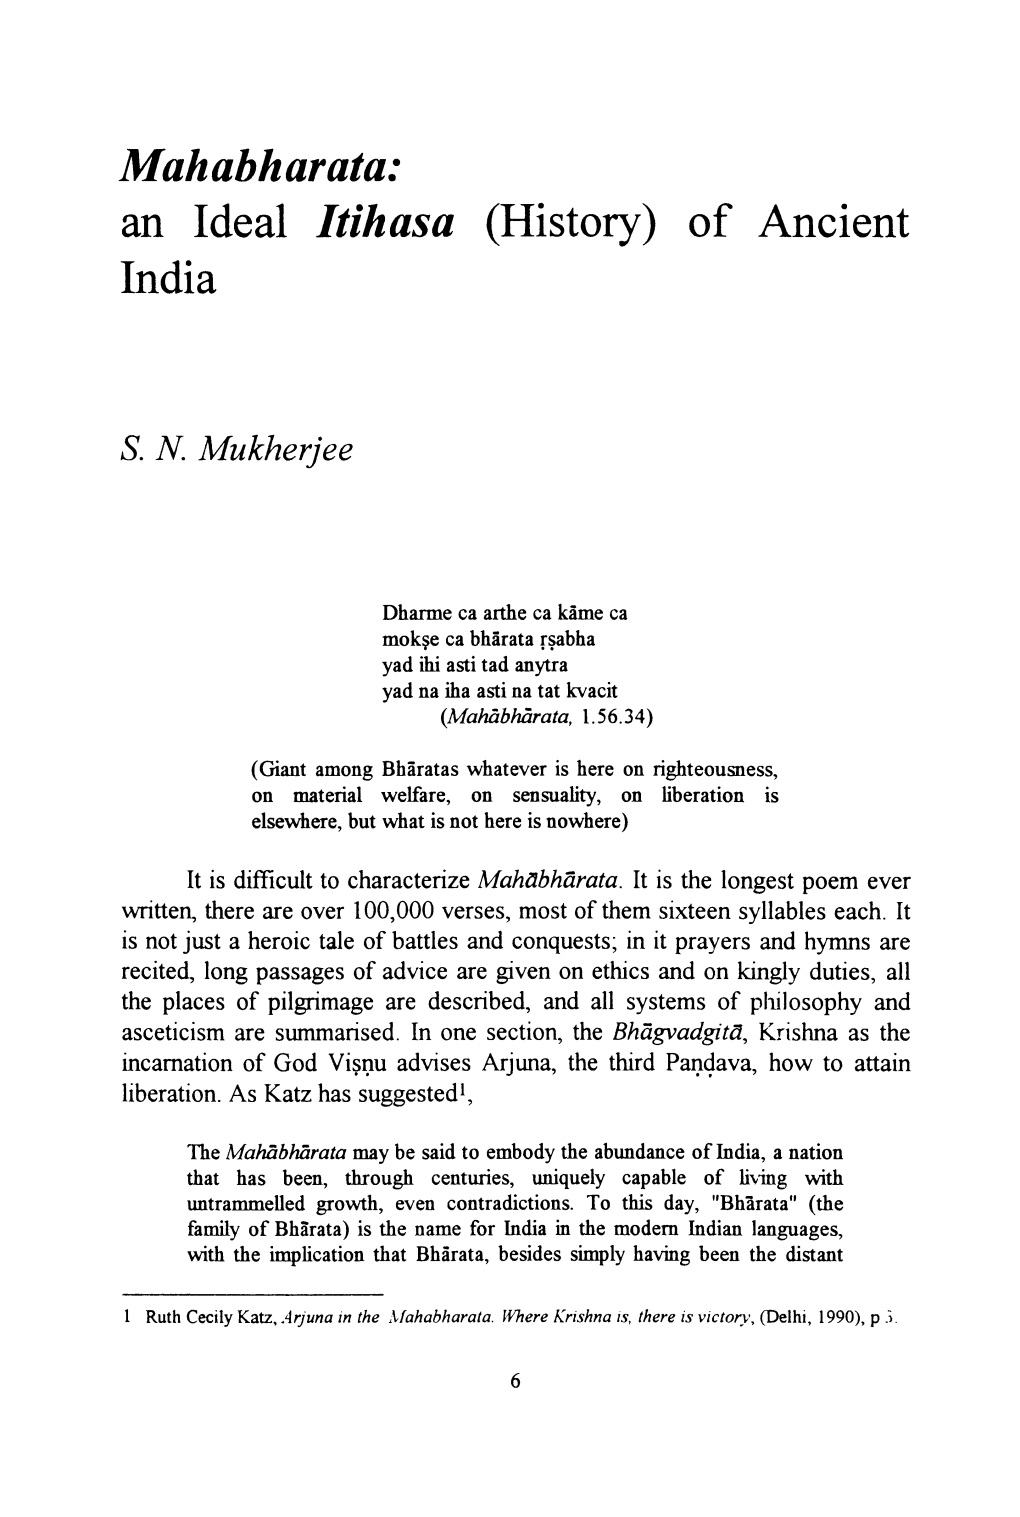 Mahabharata: an Ideal Itihasa (History) of Ancient India